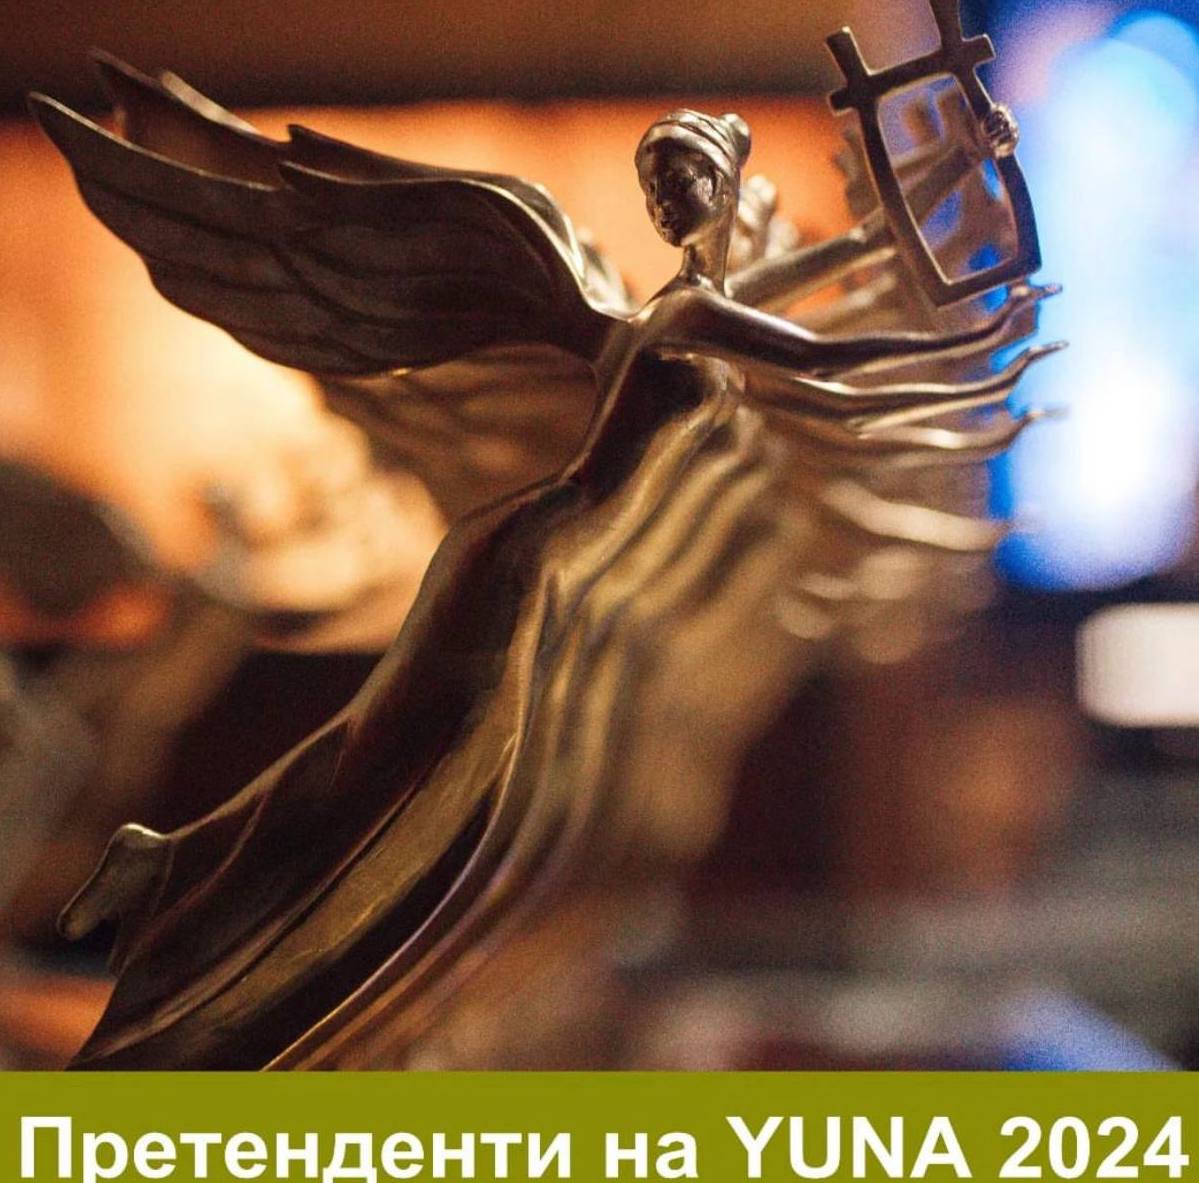 Kola, Артем Пивоваров та інші: оголосили номінантів премії YUNA